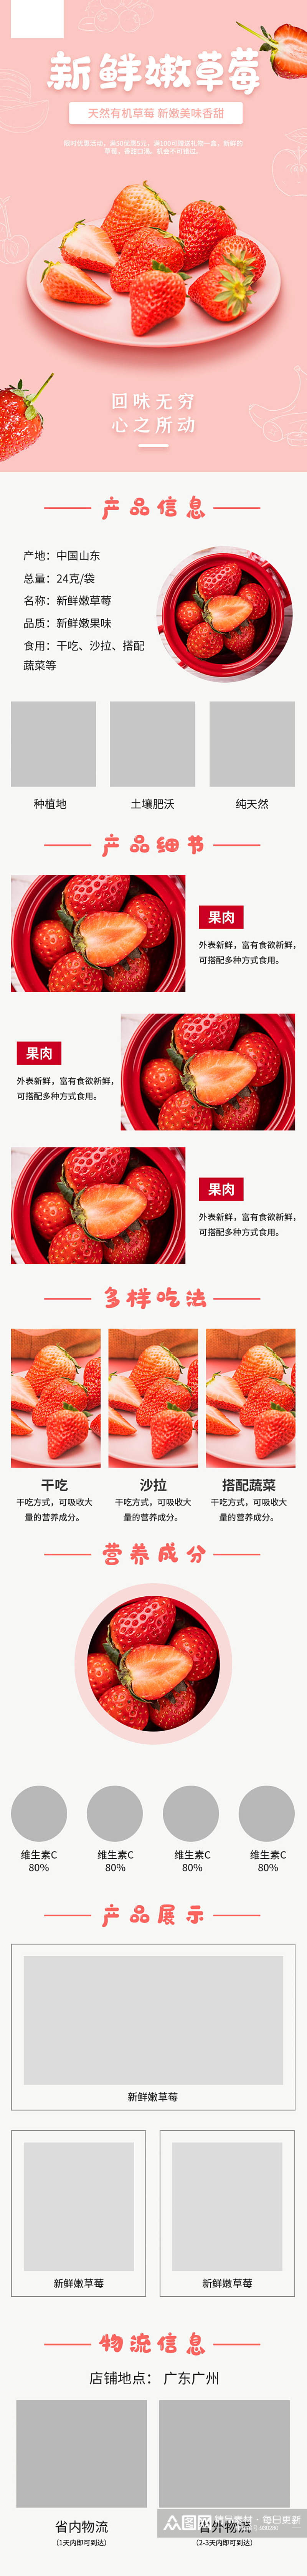 新鲜嫩草莓详情页设计素材